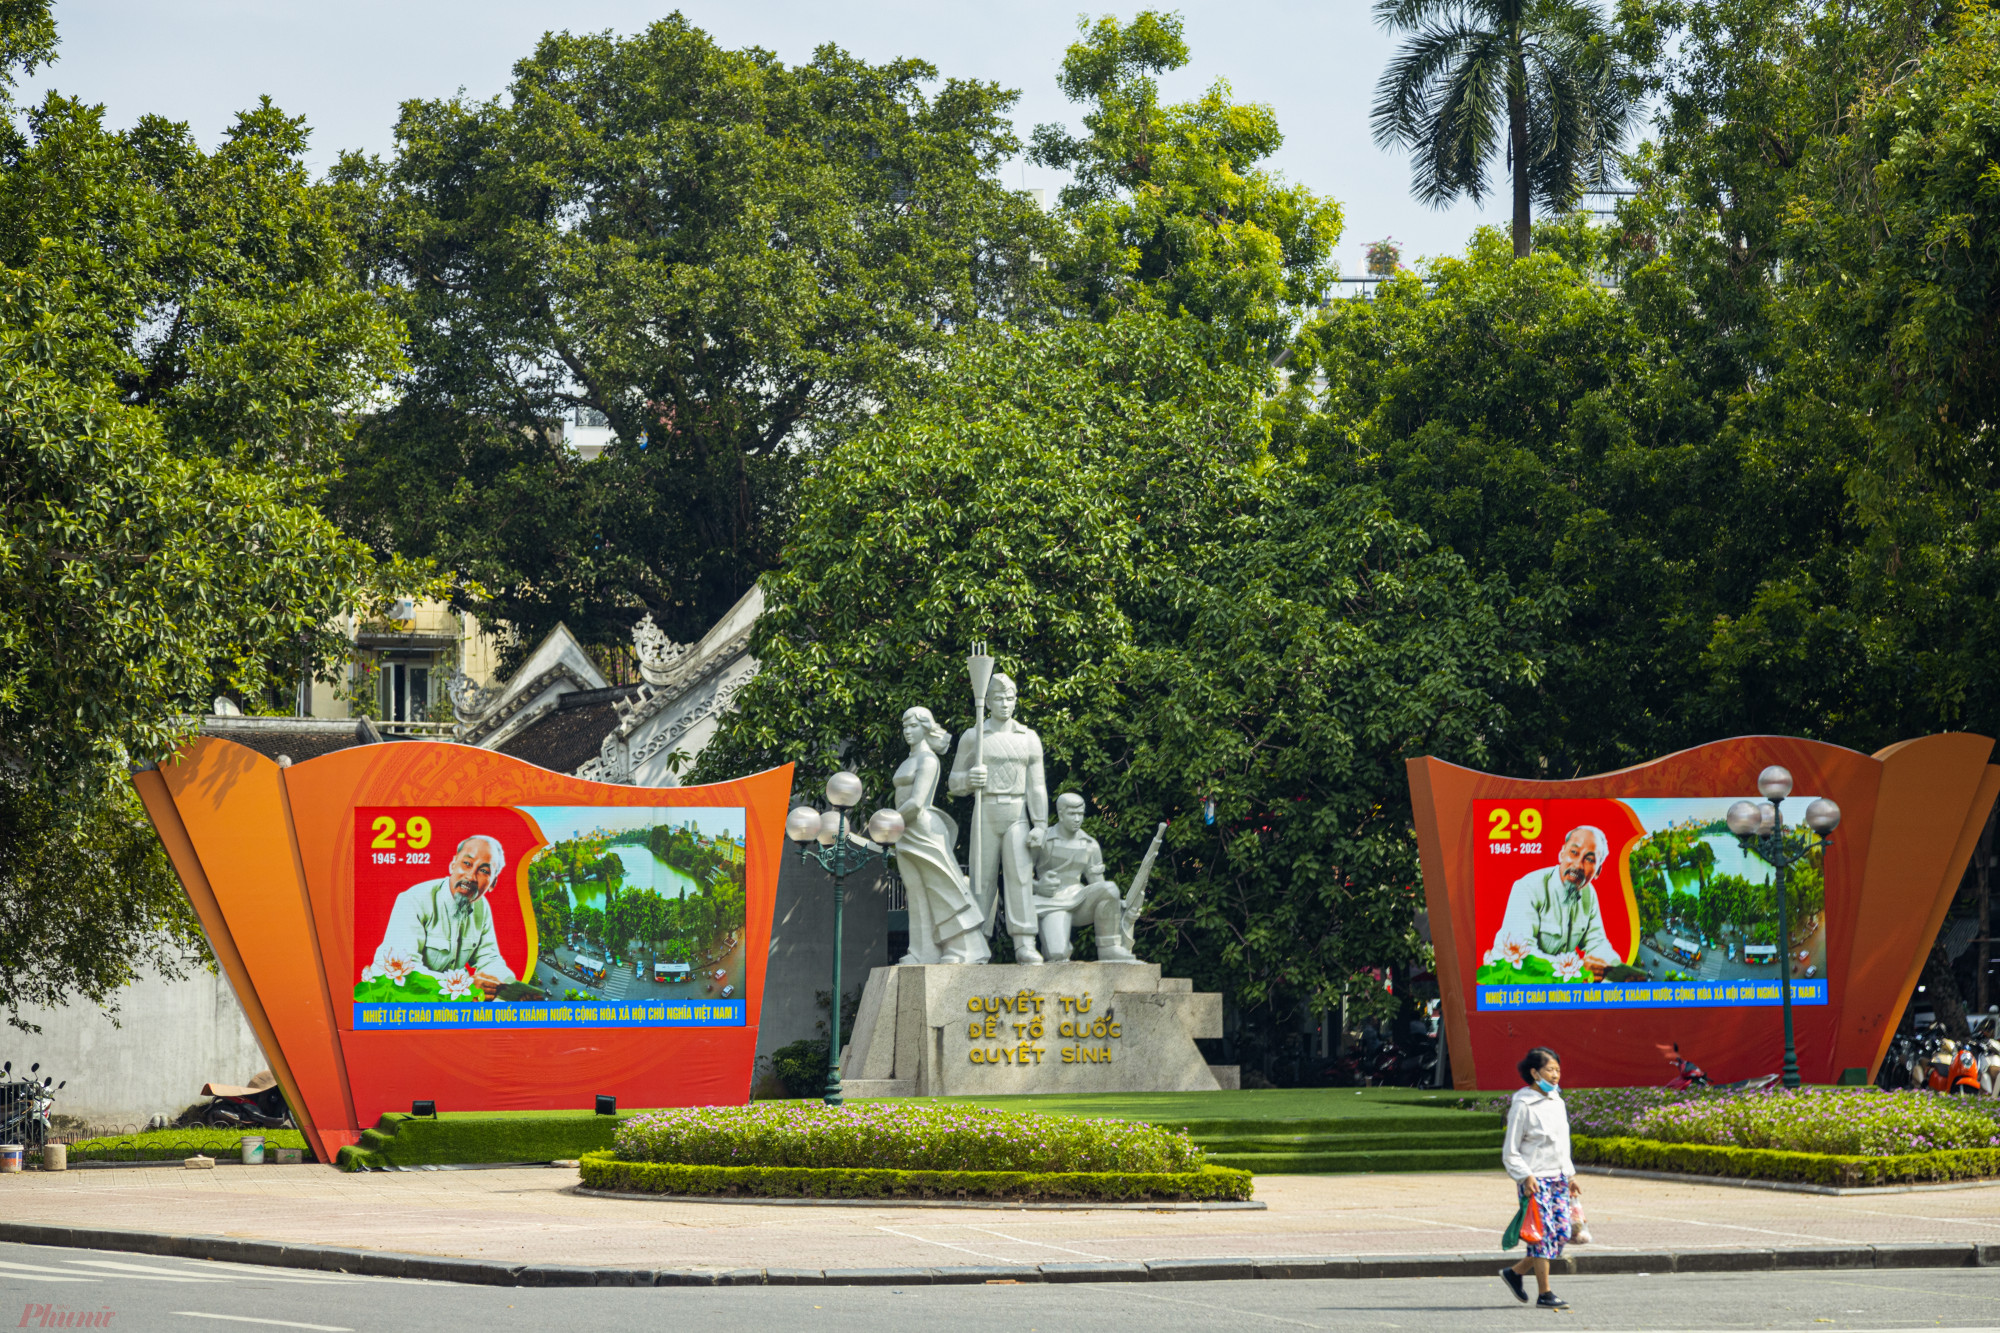 Khu vực Tượng đài Cảm Tử (quận Hoàn Kiếm) cũng được lắp đặt 2 màn hình led trình chiếu các đoạn video chào mừng kỷ niệm 77 năm ngày Quốc khánh 2/9.